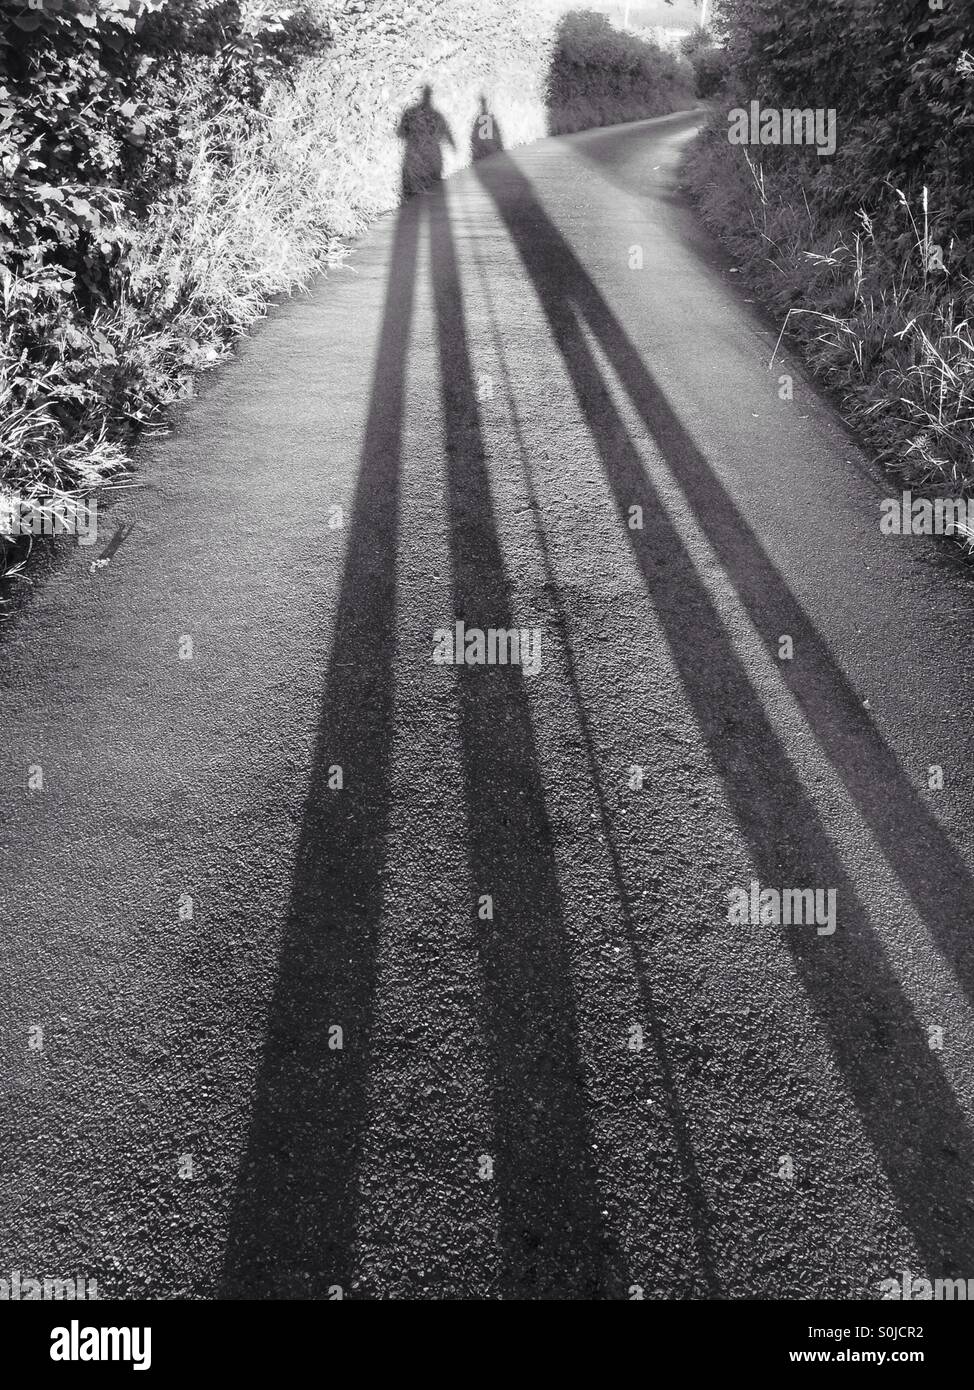 De longues ombres de 2 personnes, une avec un bâton de marche , sur une route Banque D'Images